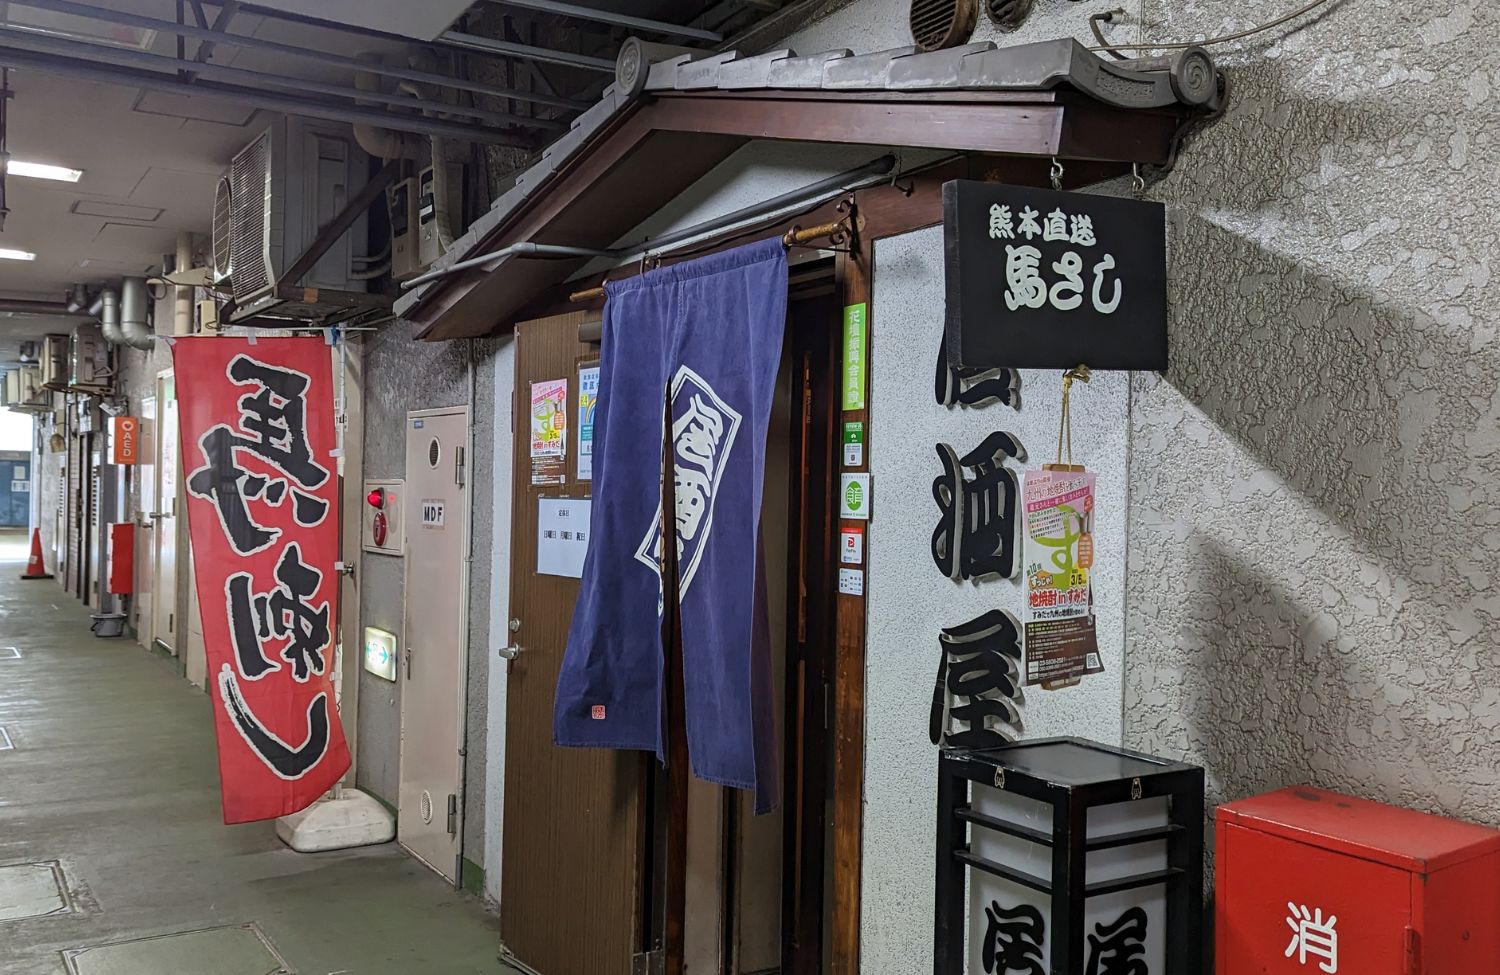 日本家屋を思わせる古風な店構え。のれんをくぐると、テレビや人の温かな声が聞こえる。